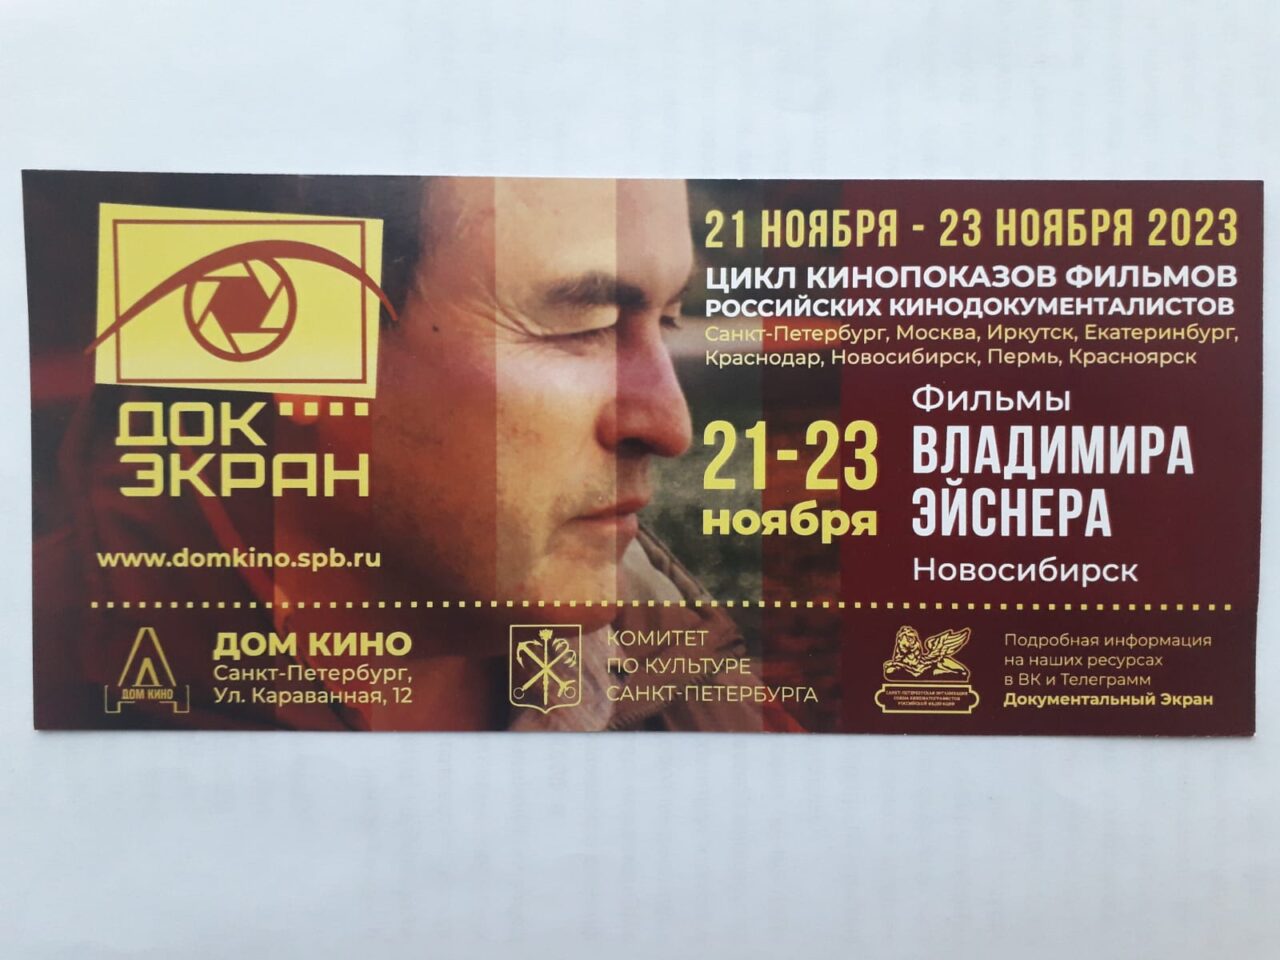 В киноклубе «Документальный Экран» (г.Санкт-Петербург)                                   с 21 по 23 ноября состоятся показы и творческий вечер  кинорежиссера Владимира ЭЙСНЕРА